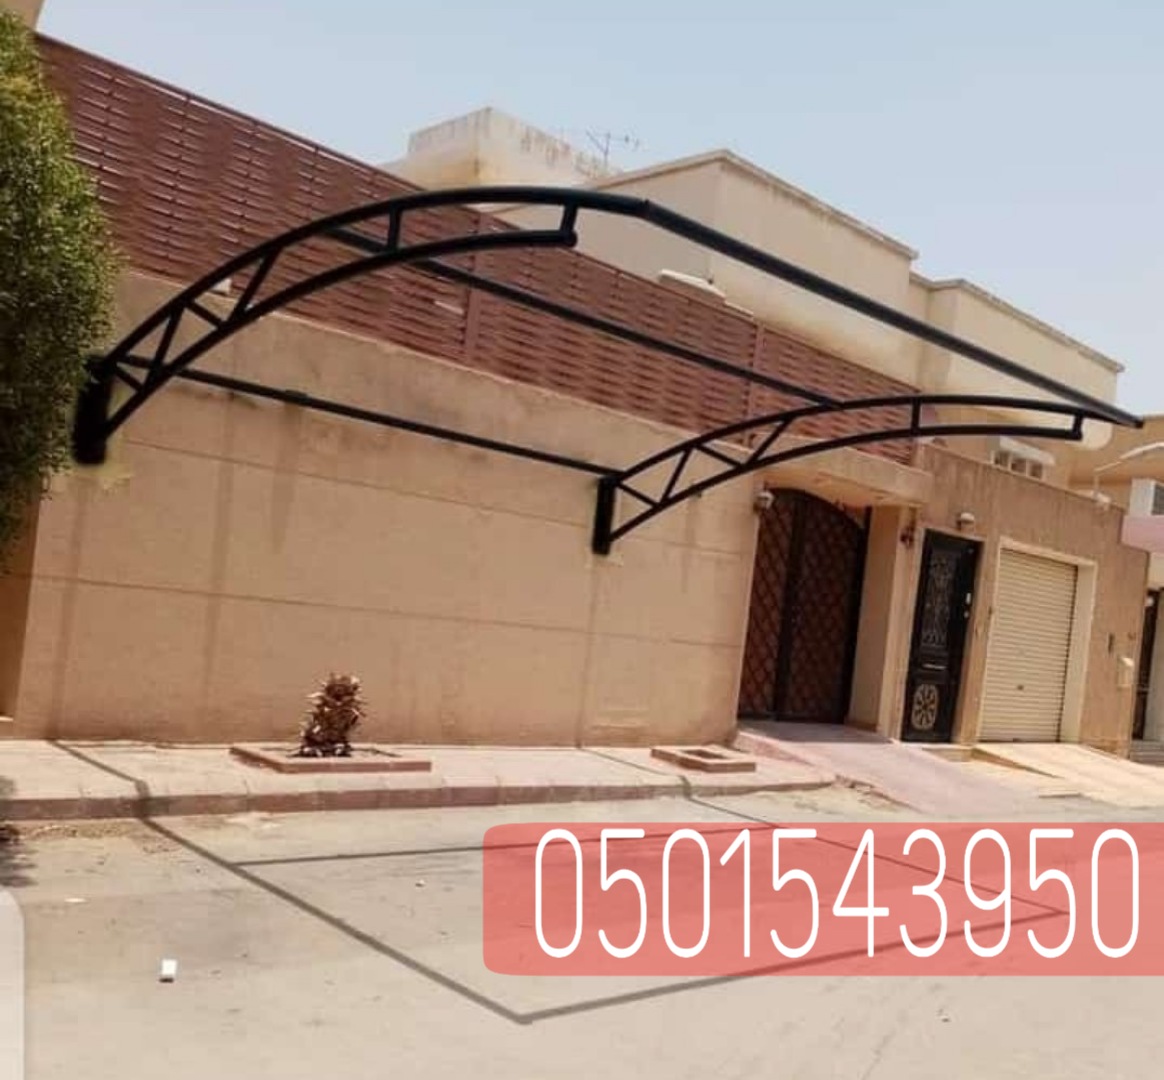 انواع مظلات السيارات في الرياض , 0501543950